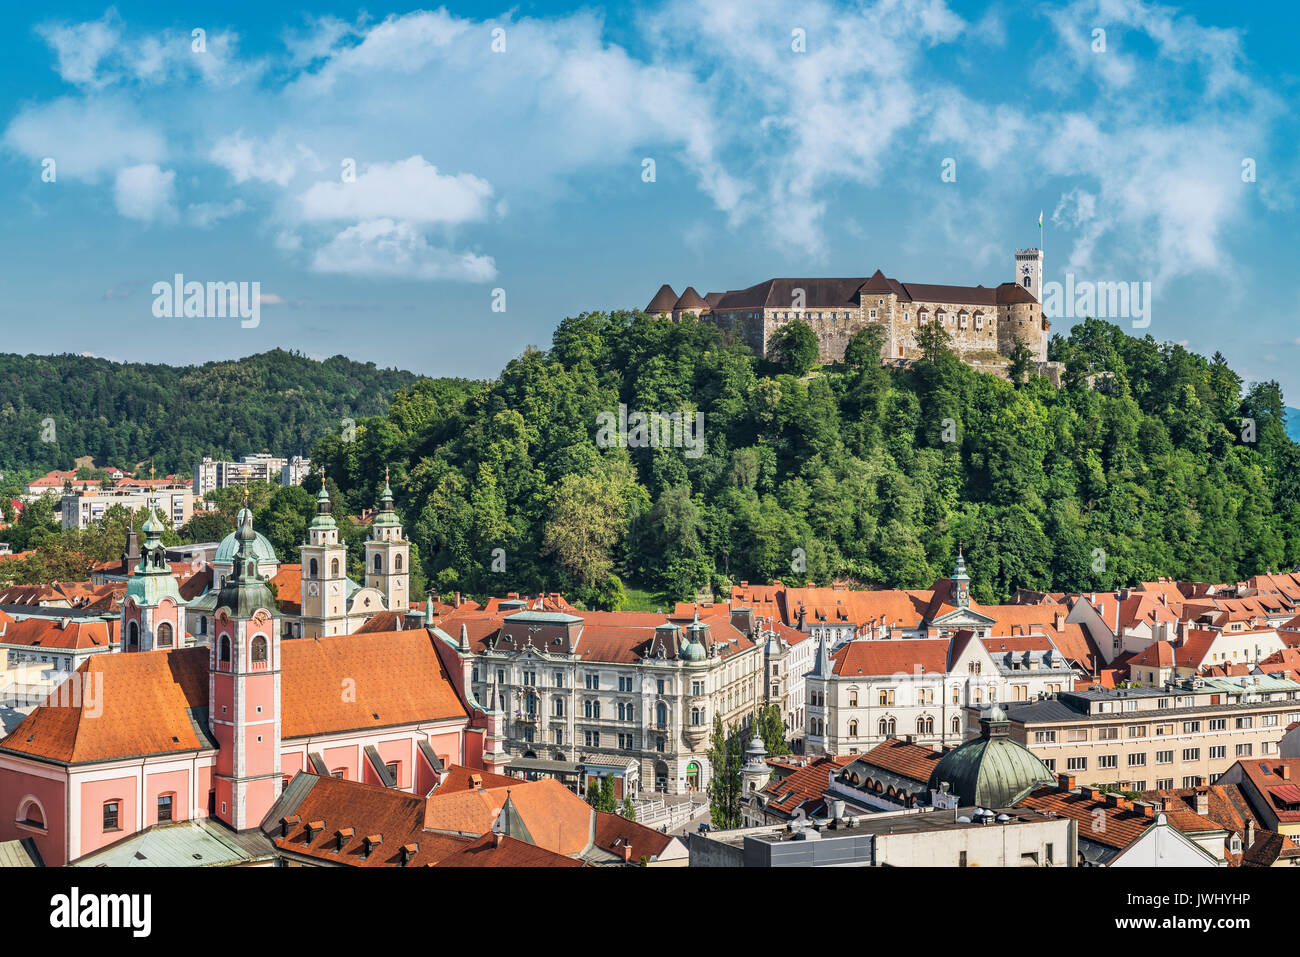 Die Burg von Ljubljana ist eine mächtige mittelalterliche Festung und das Symbol der slowenischen Hauptstadt Ljubljana, Slowenien, Europa Stockfoto